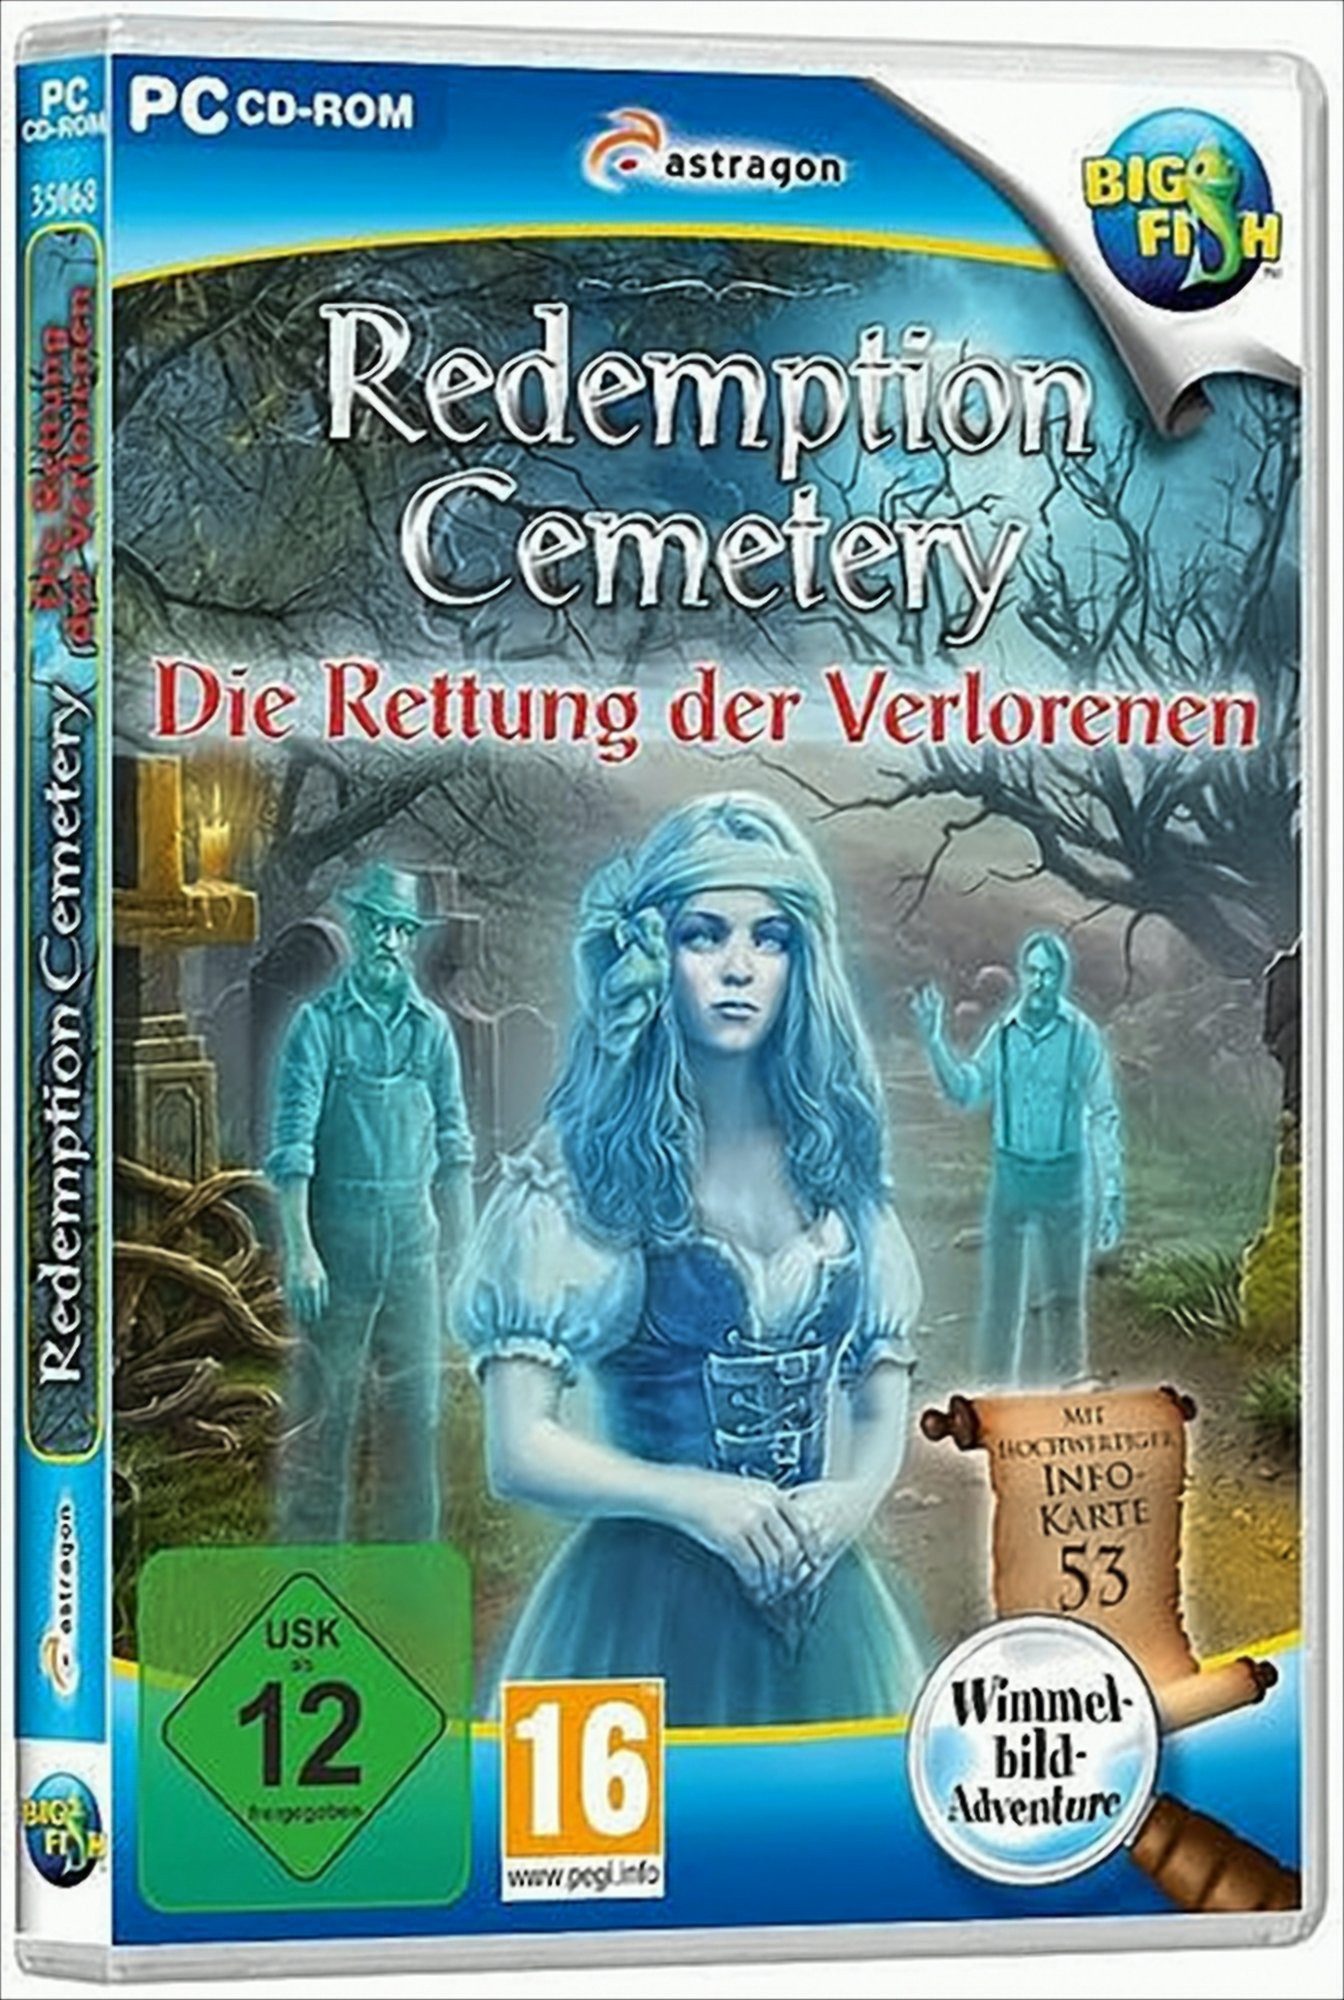 Redemption Cemetery: Die Rettung der Verlorenen PC